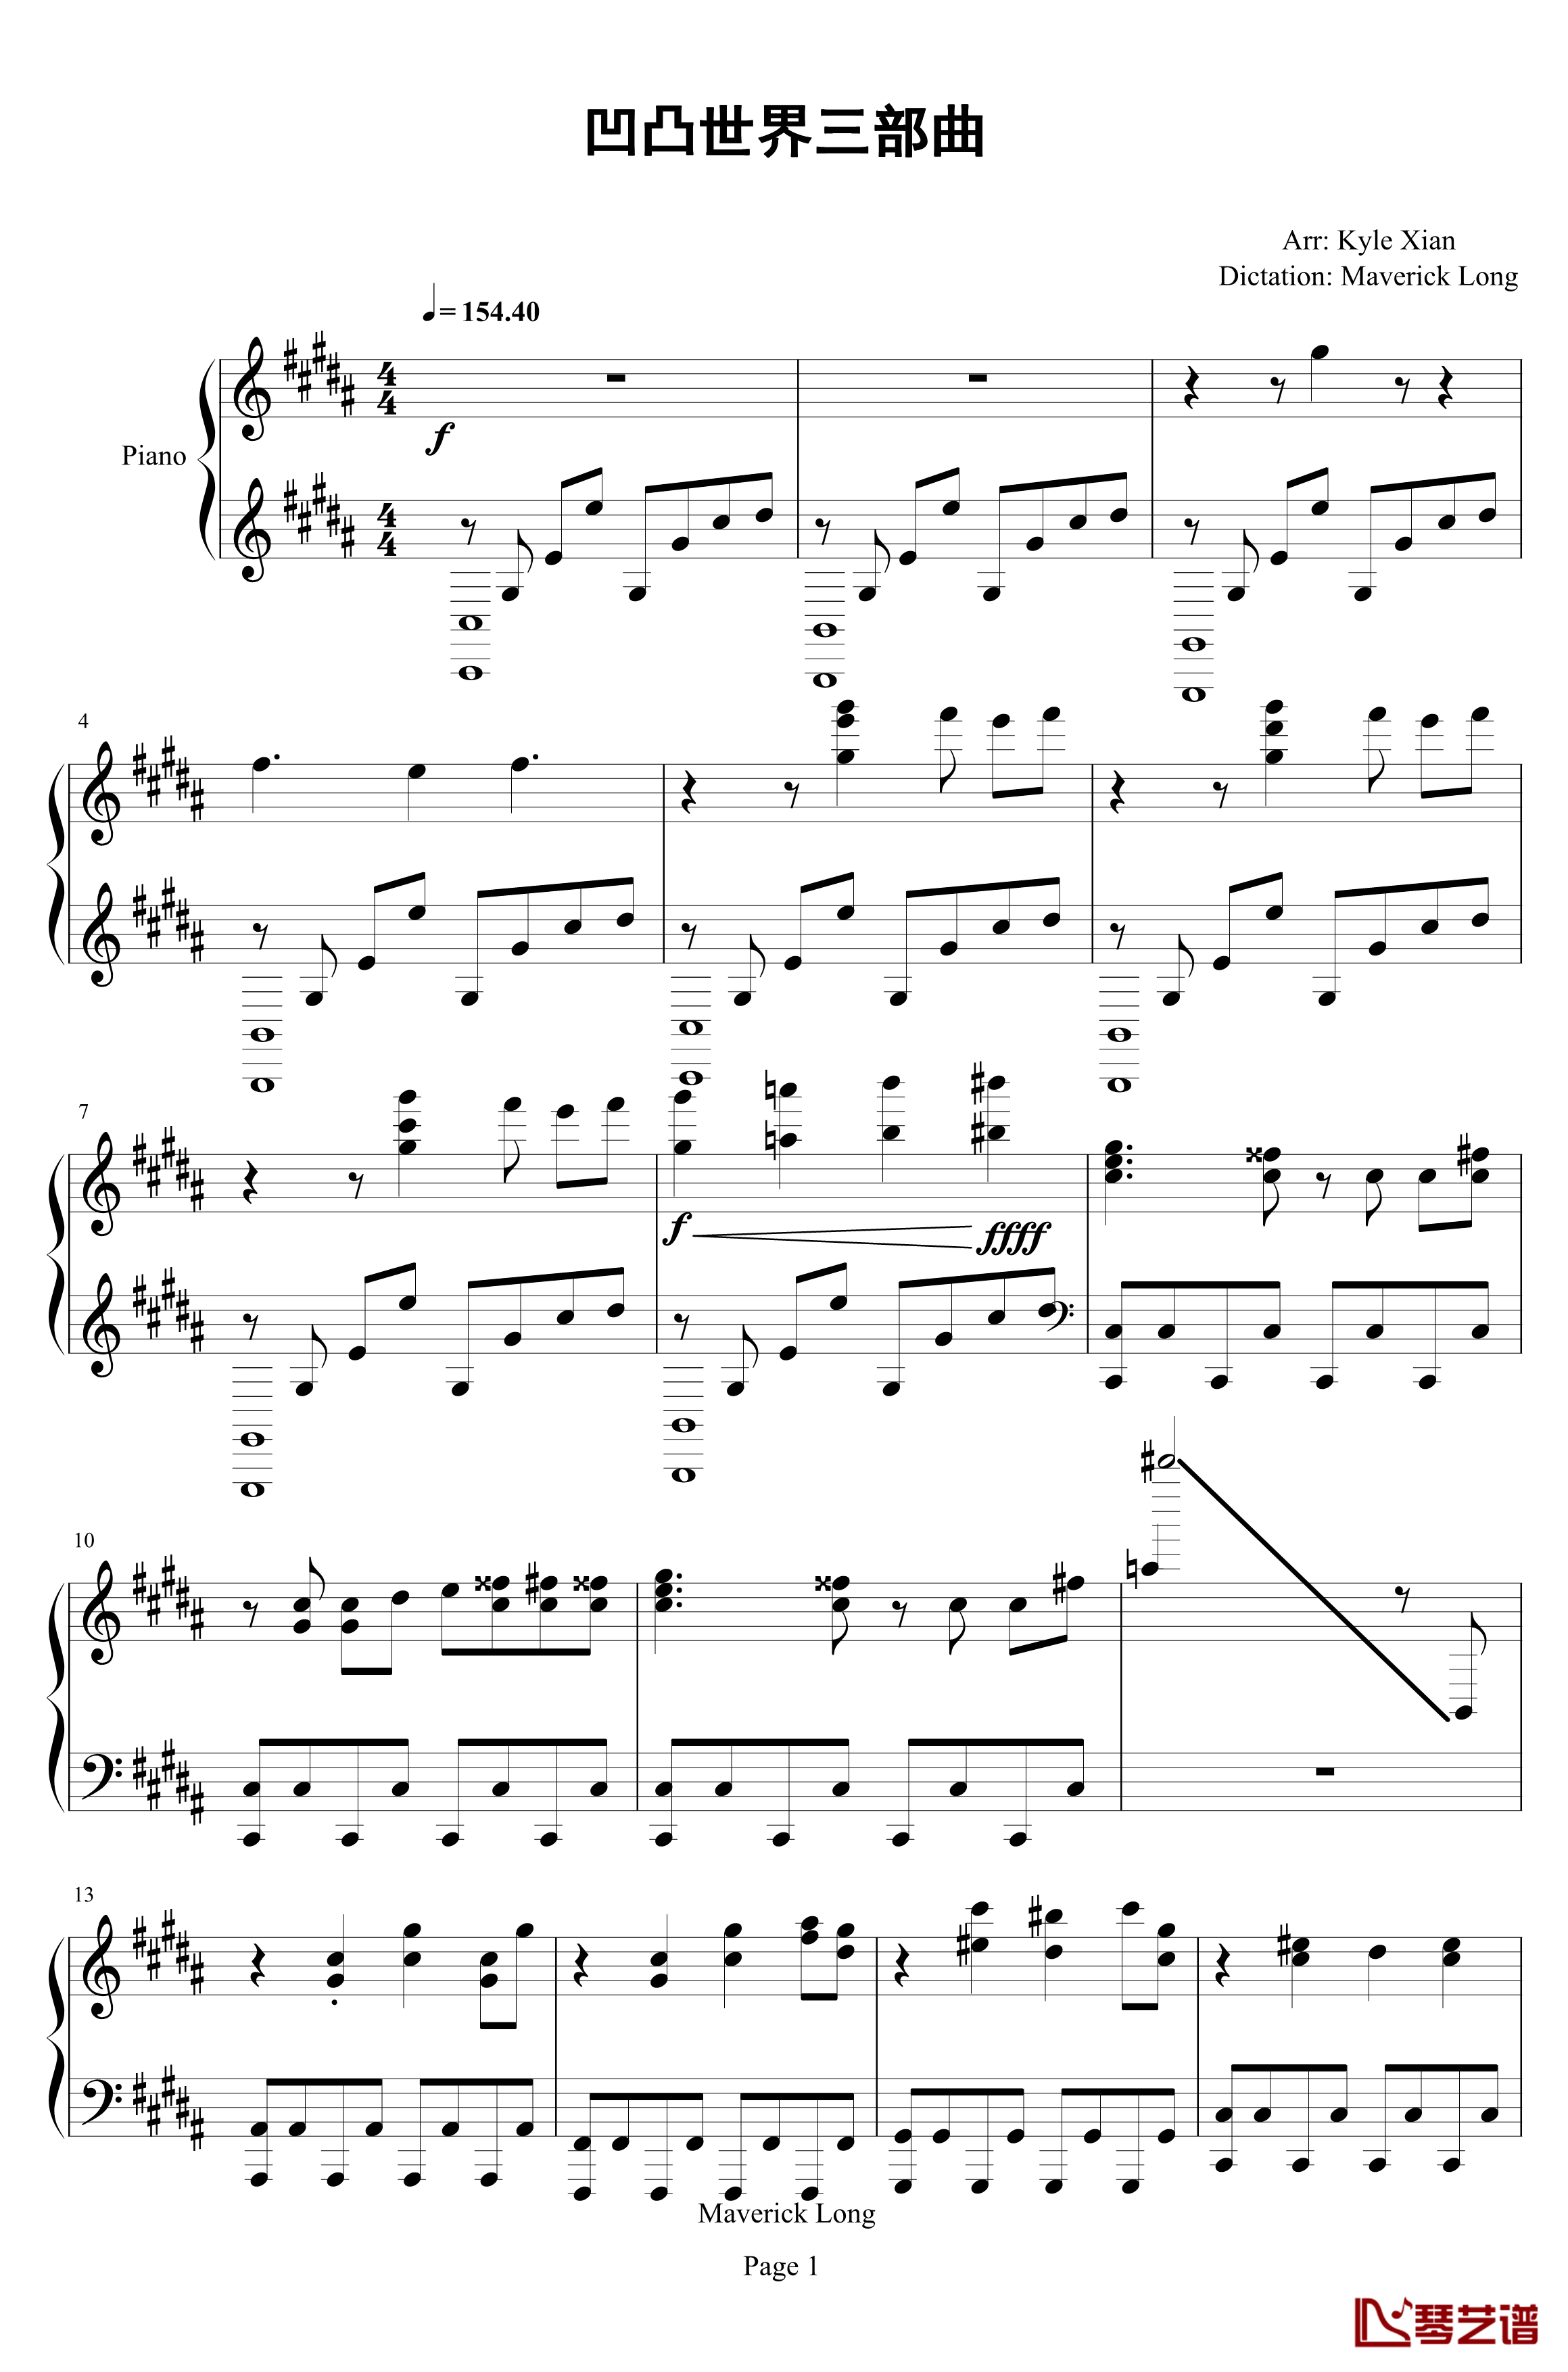 凹凸世界三部曲钢琴谱-Kyle Xian1